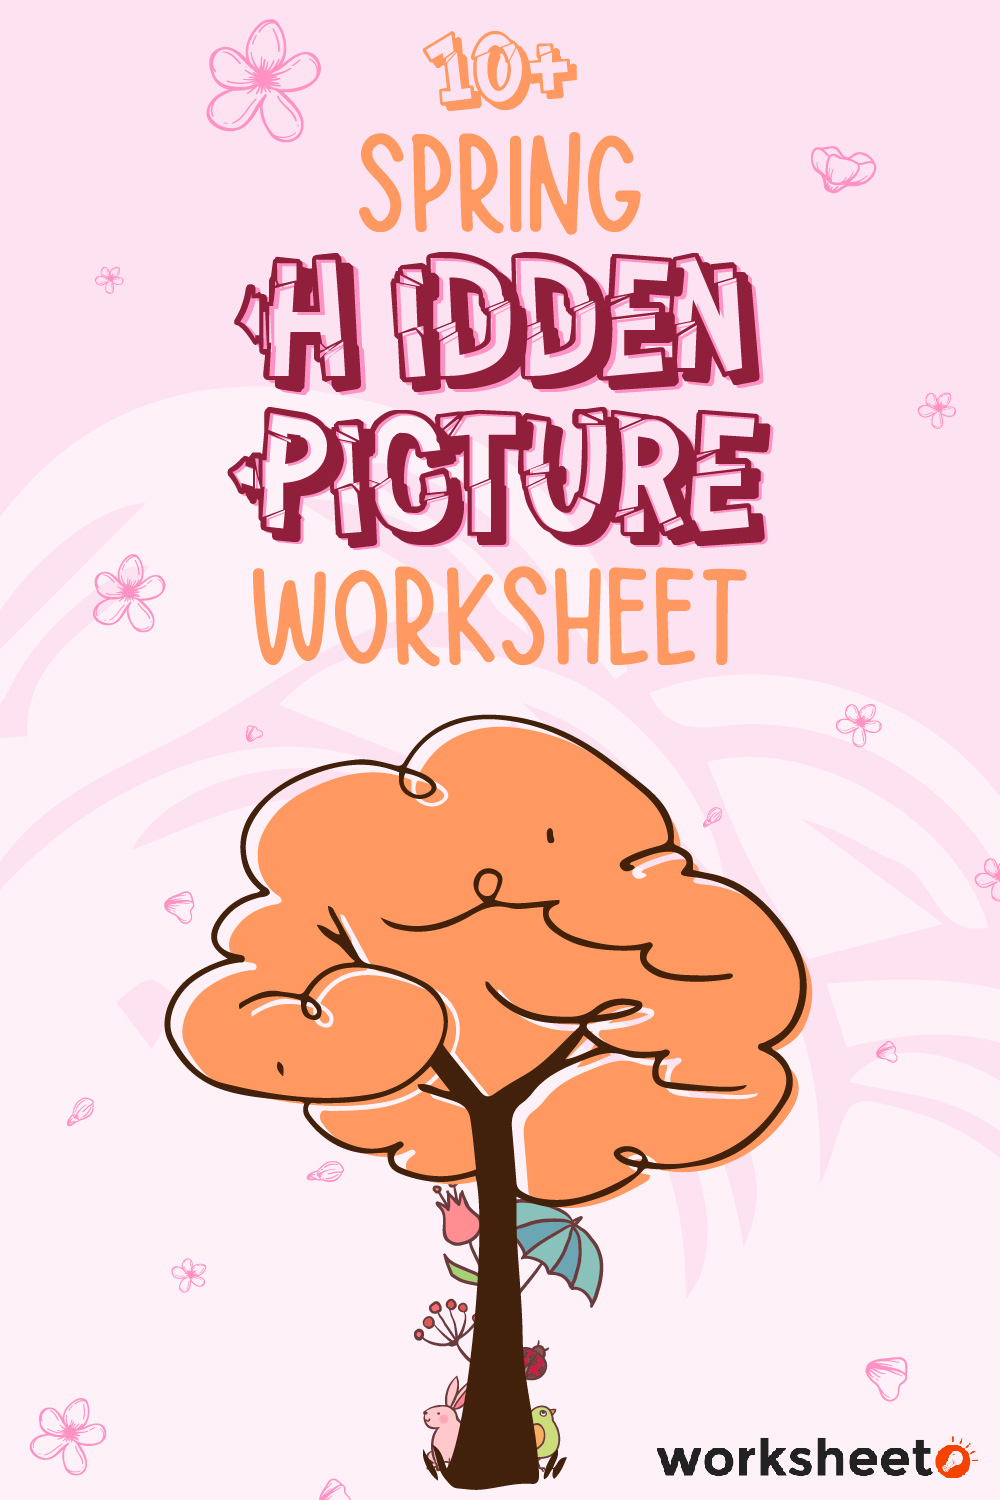 16 Images of Spring Hidden Picture Worksheet